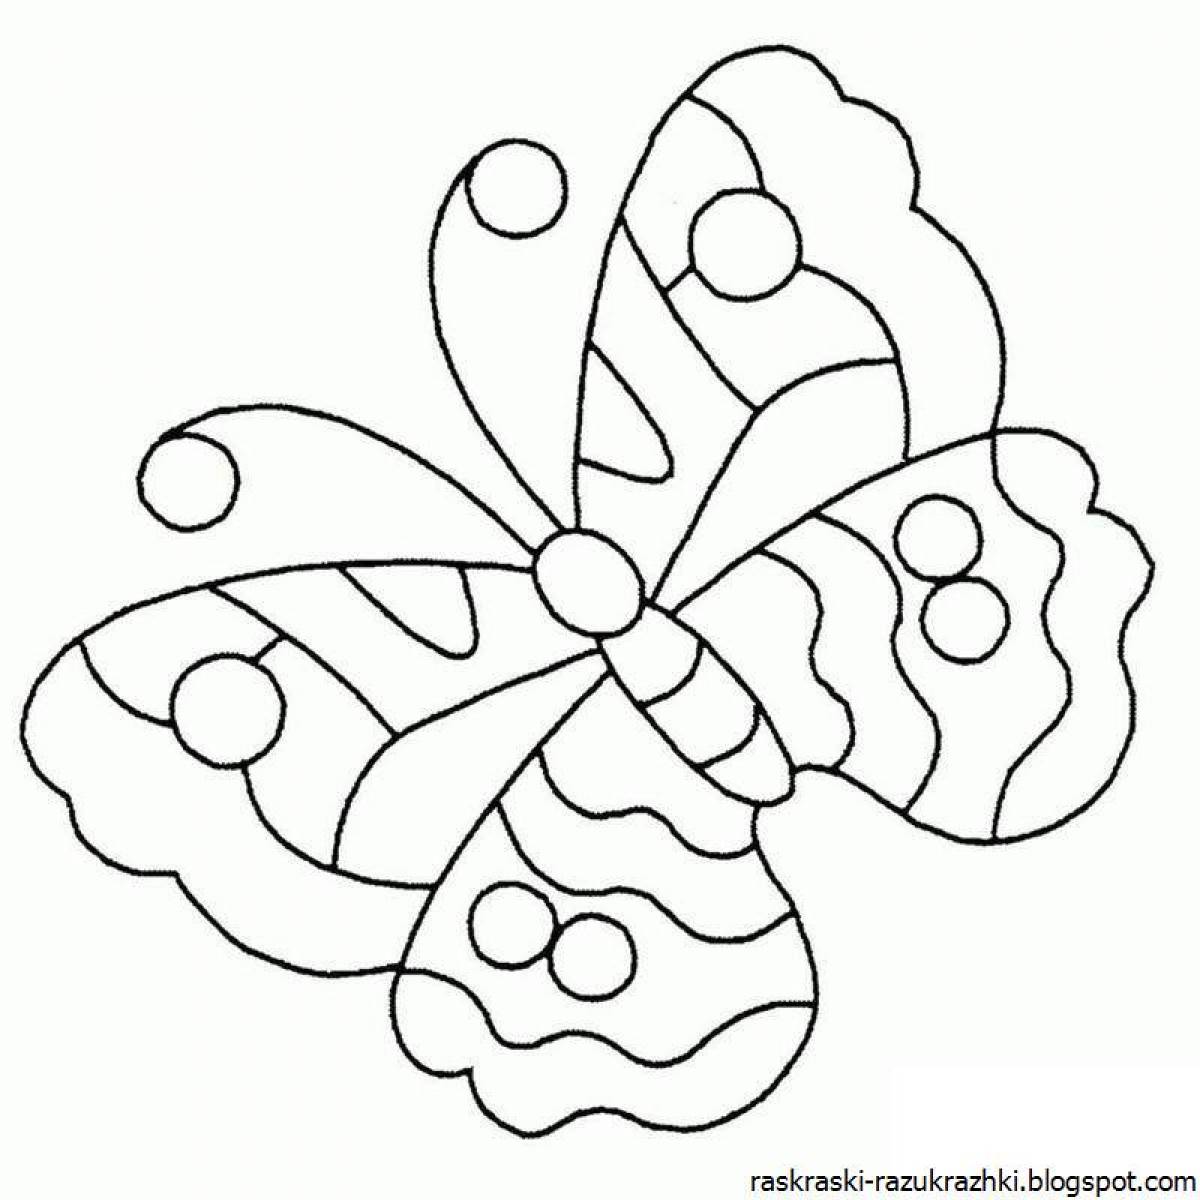 Раскраски для детей 5 лет бабочки